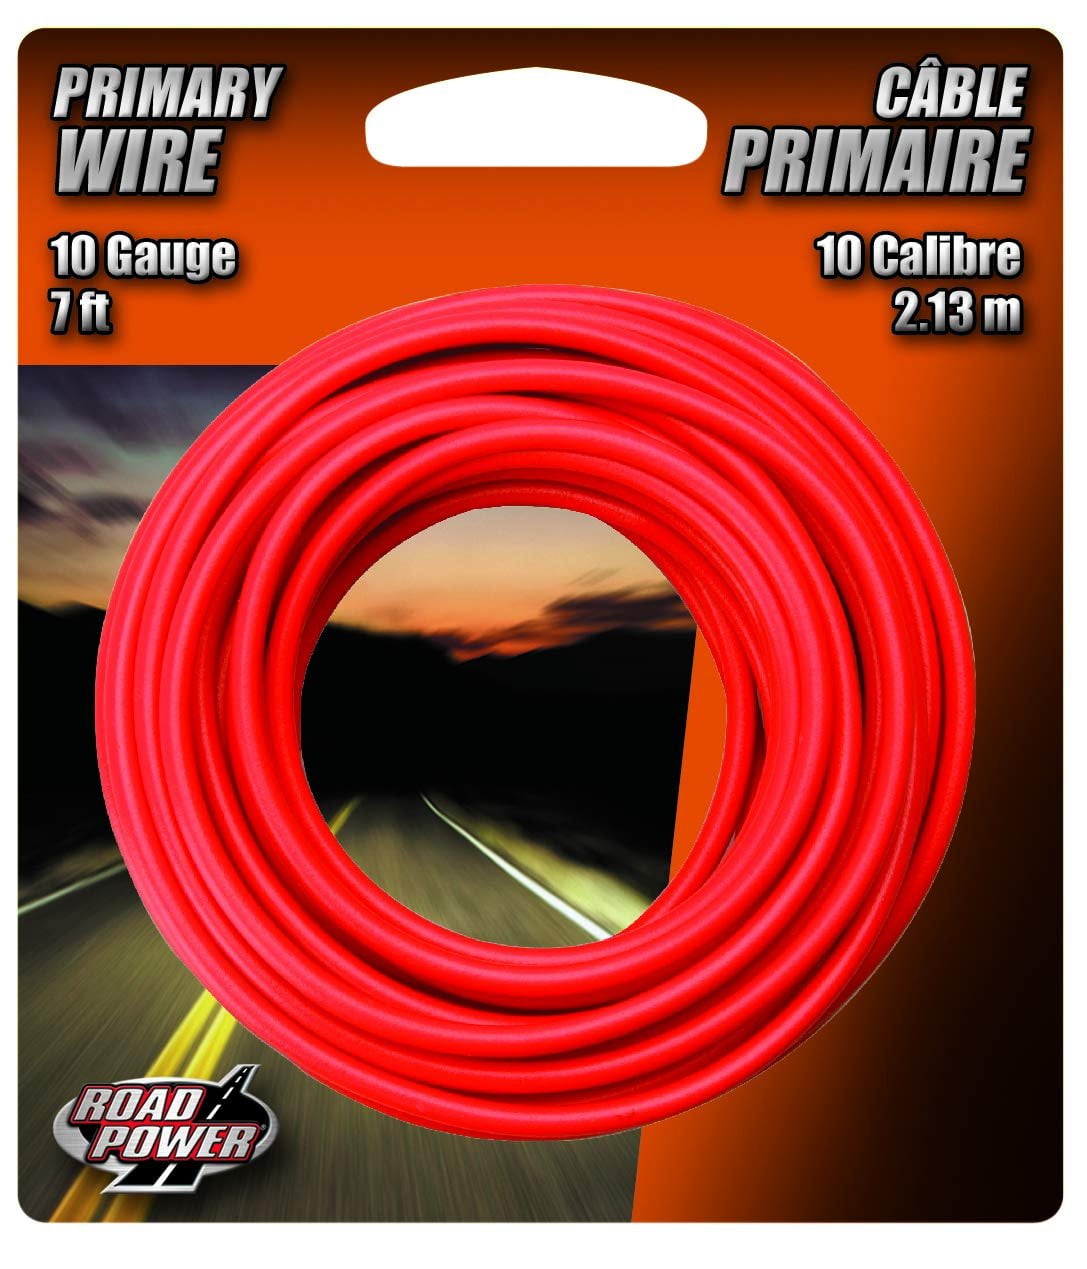 Black Coleman Cable 55667333 18 Gauge Automotive Copper Wire 33' 